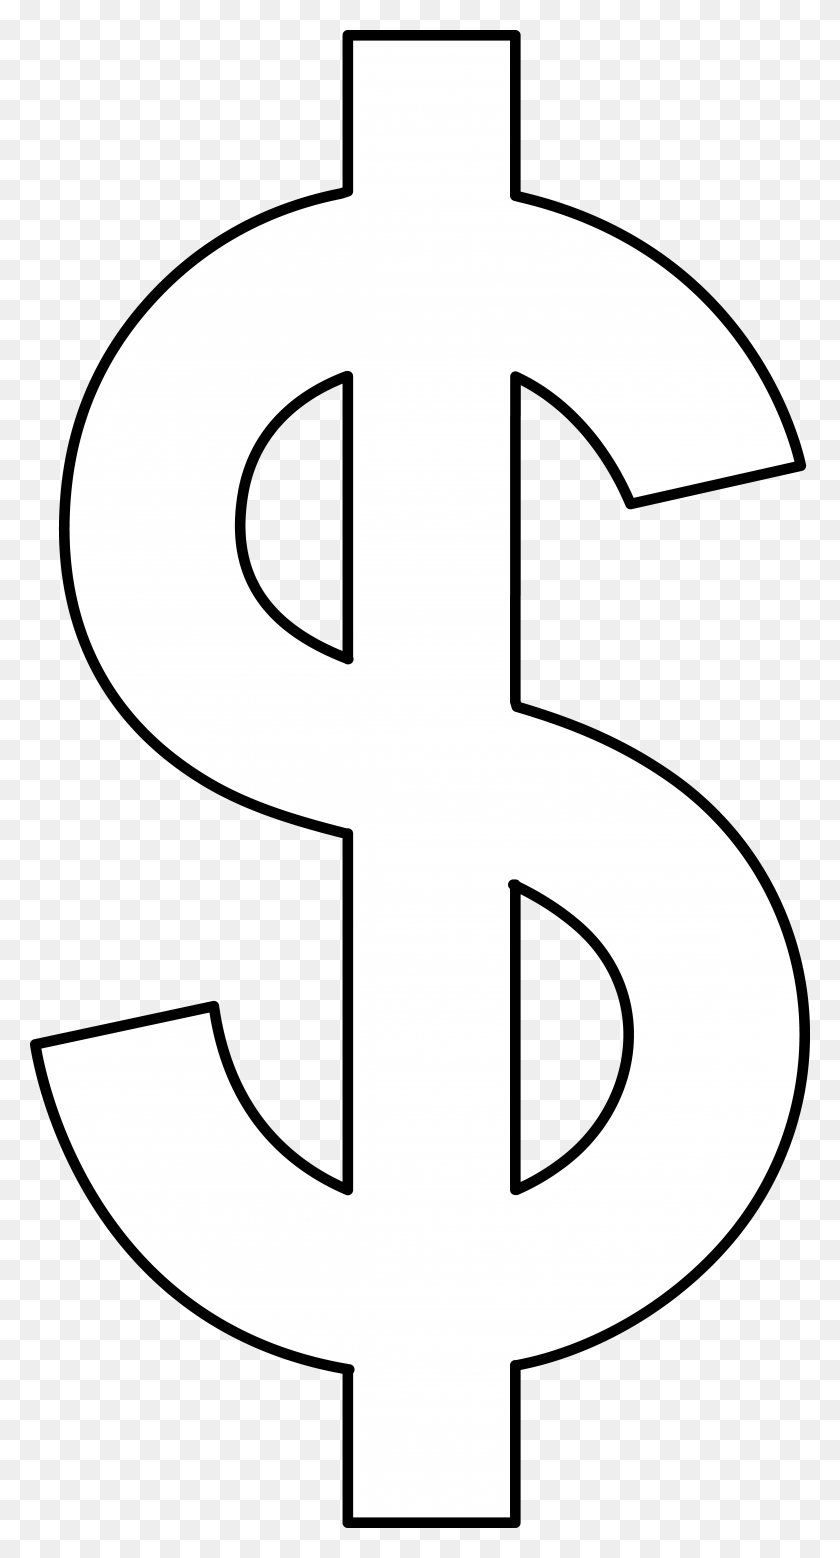 4597x8833 Money Us Dollar Lineart Clip Art - Softball Field Clipart